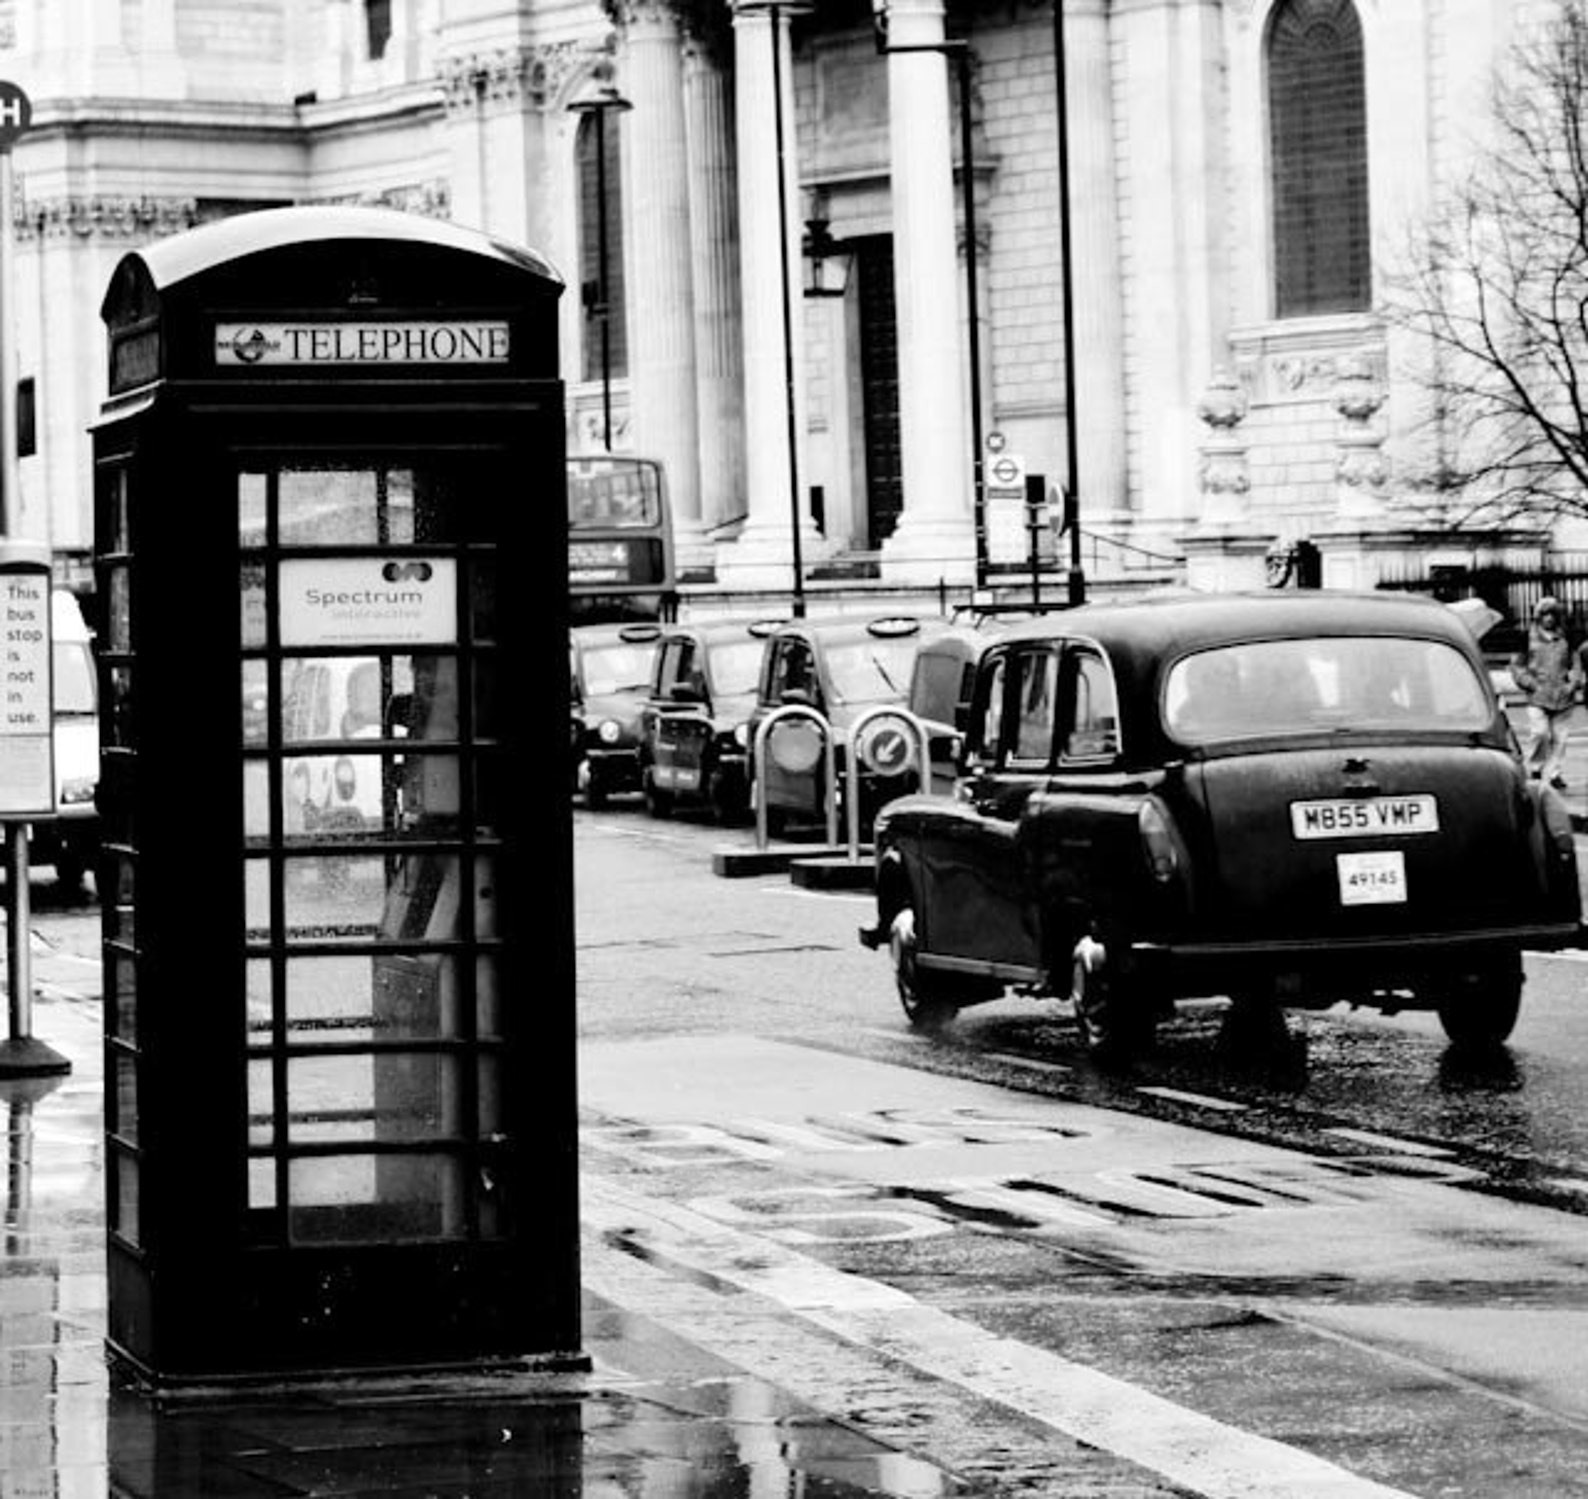 Черно белые фото лондона